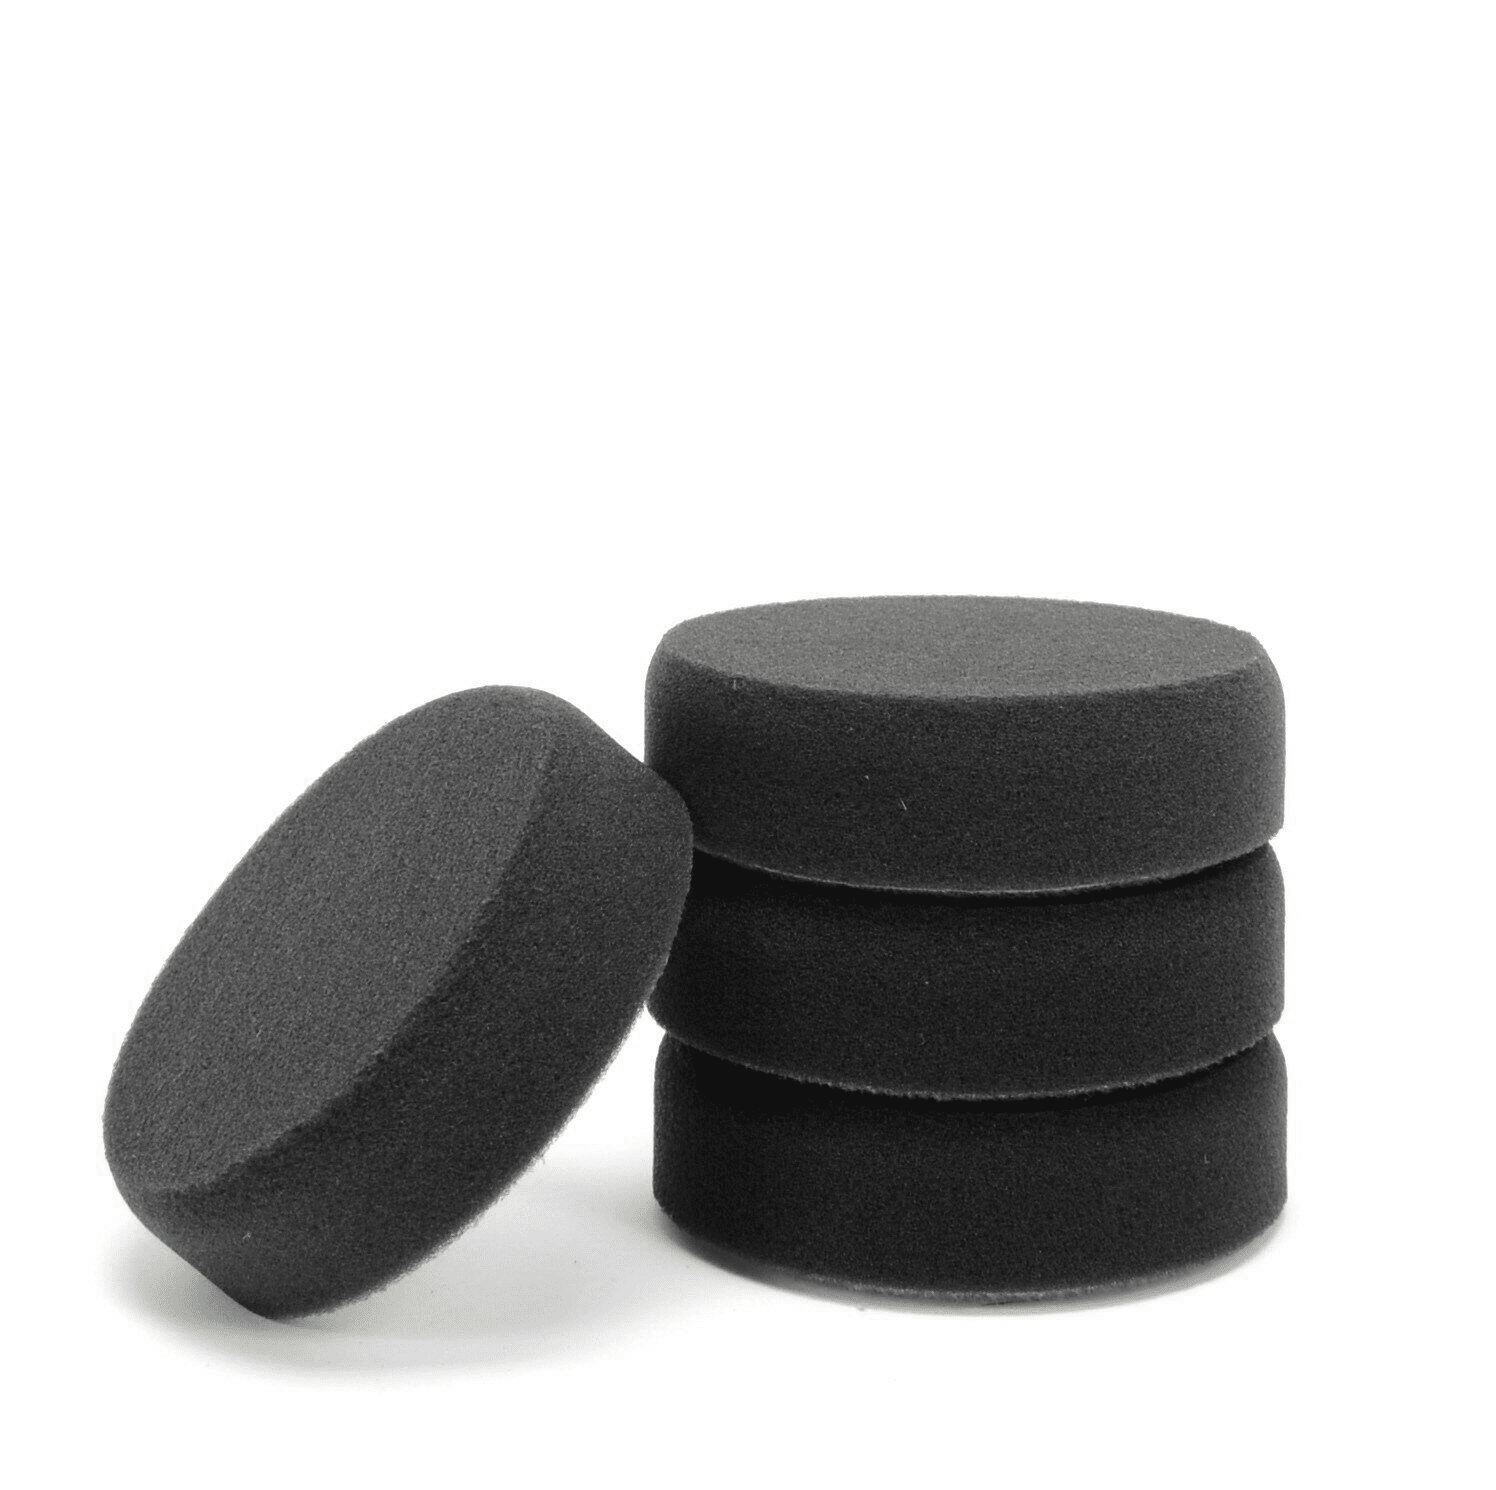 Afbeelding van Polierschwamm 77mm schwarz glatt weich für Autolack und Politur Wachs 4er Set 